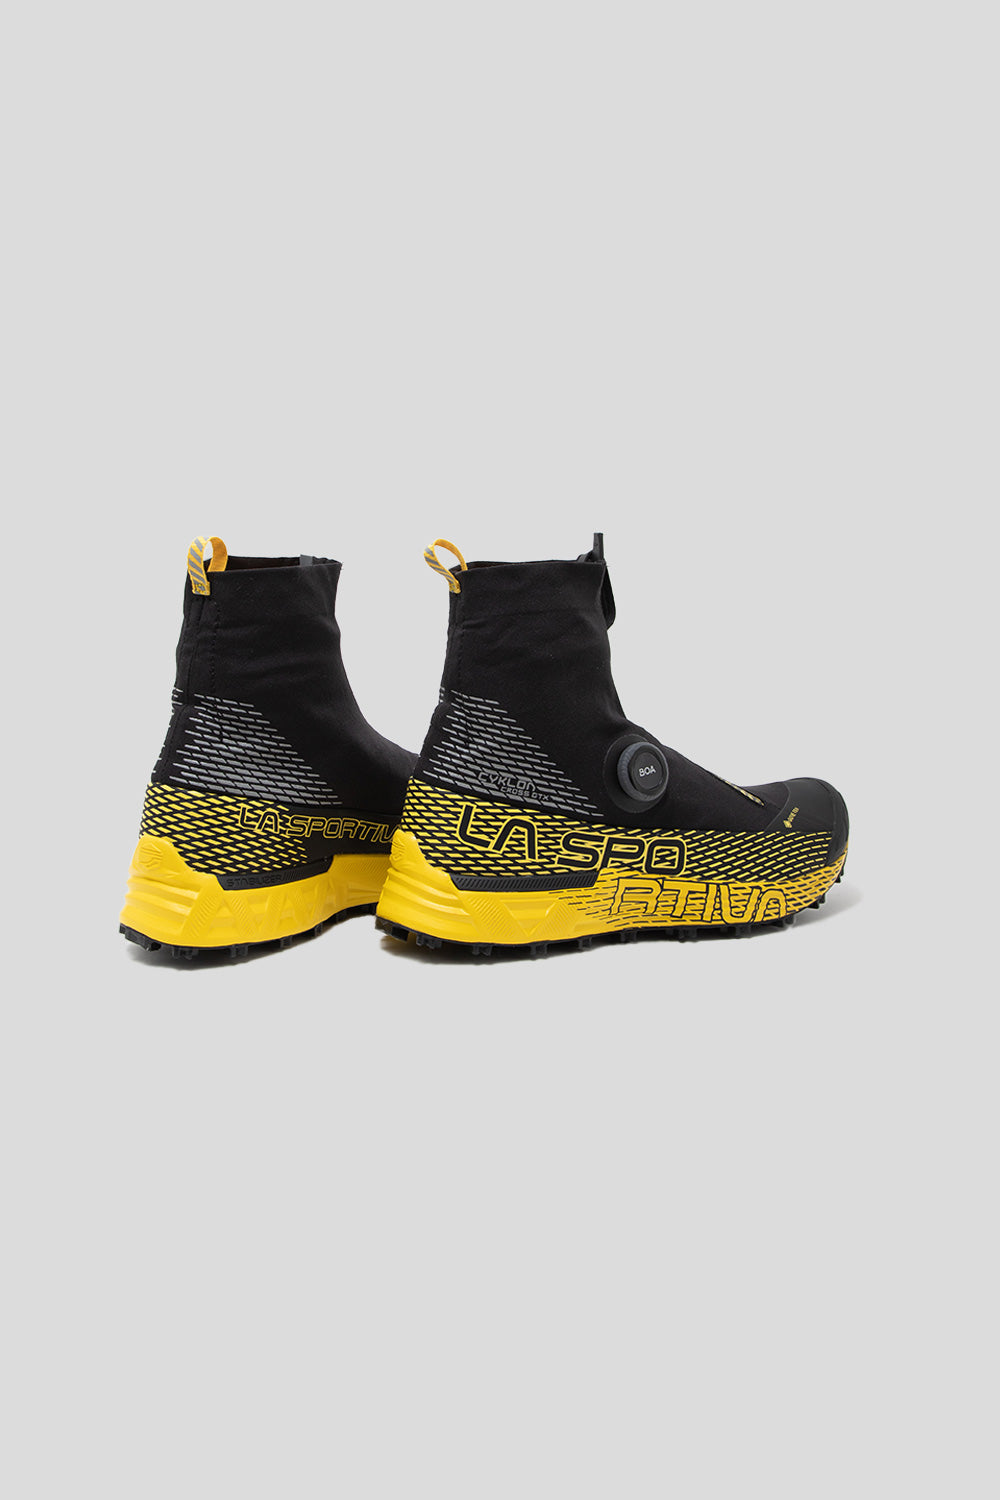 La Sportiva Cyklon Cross GTX Shoe in Black / Yellow